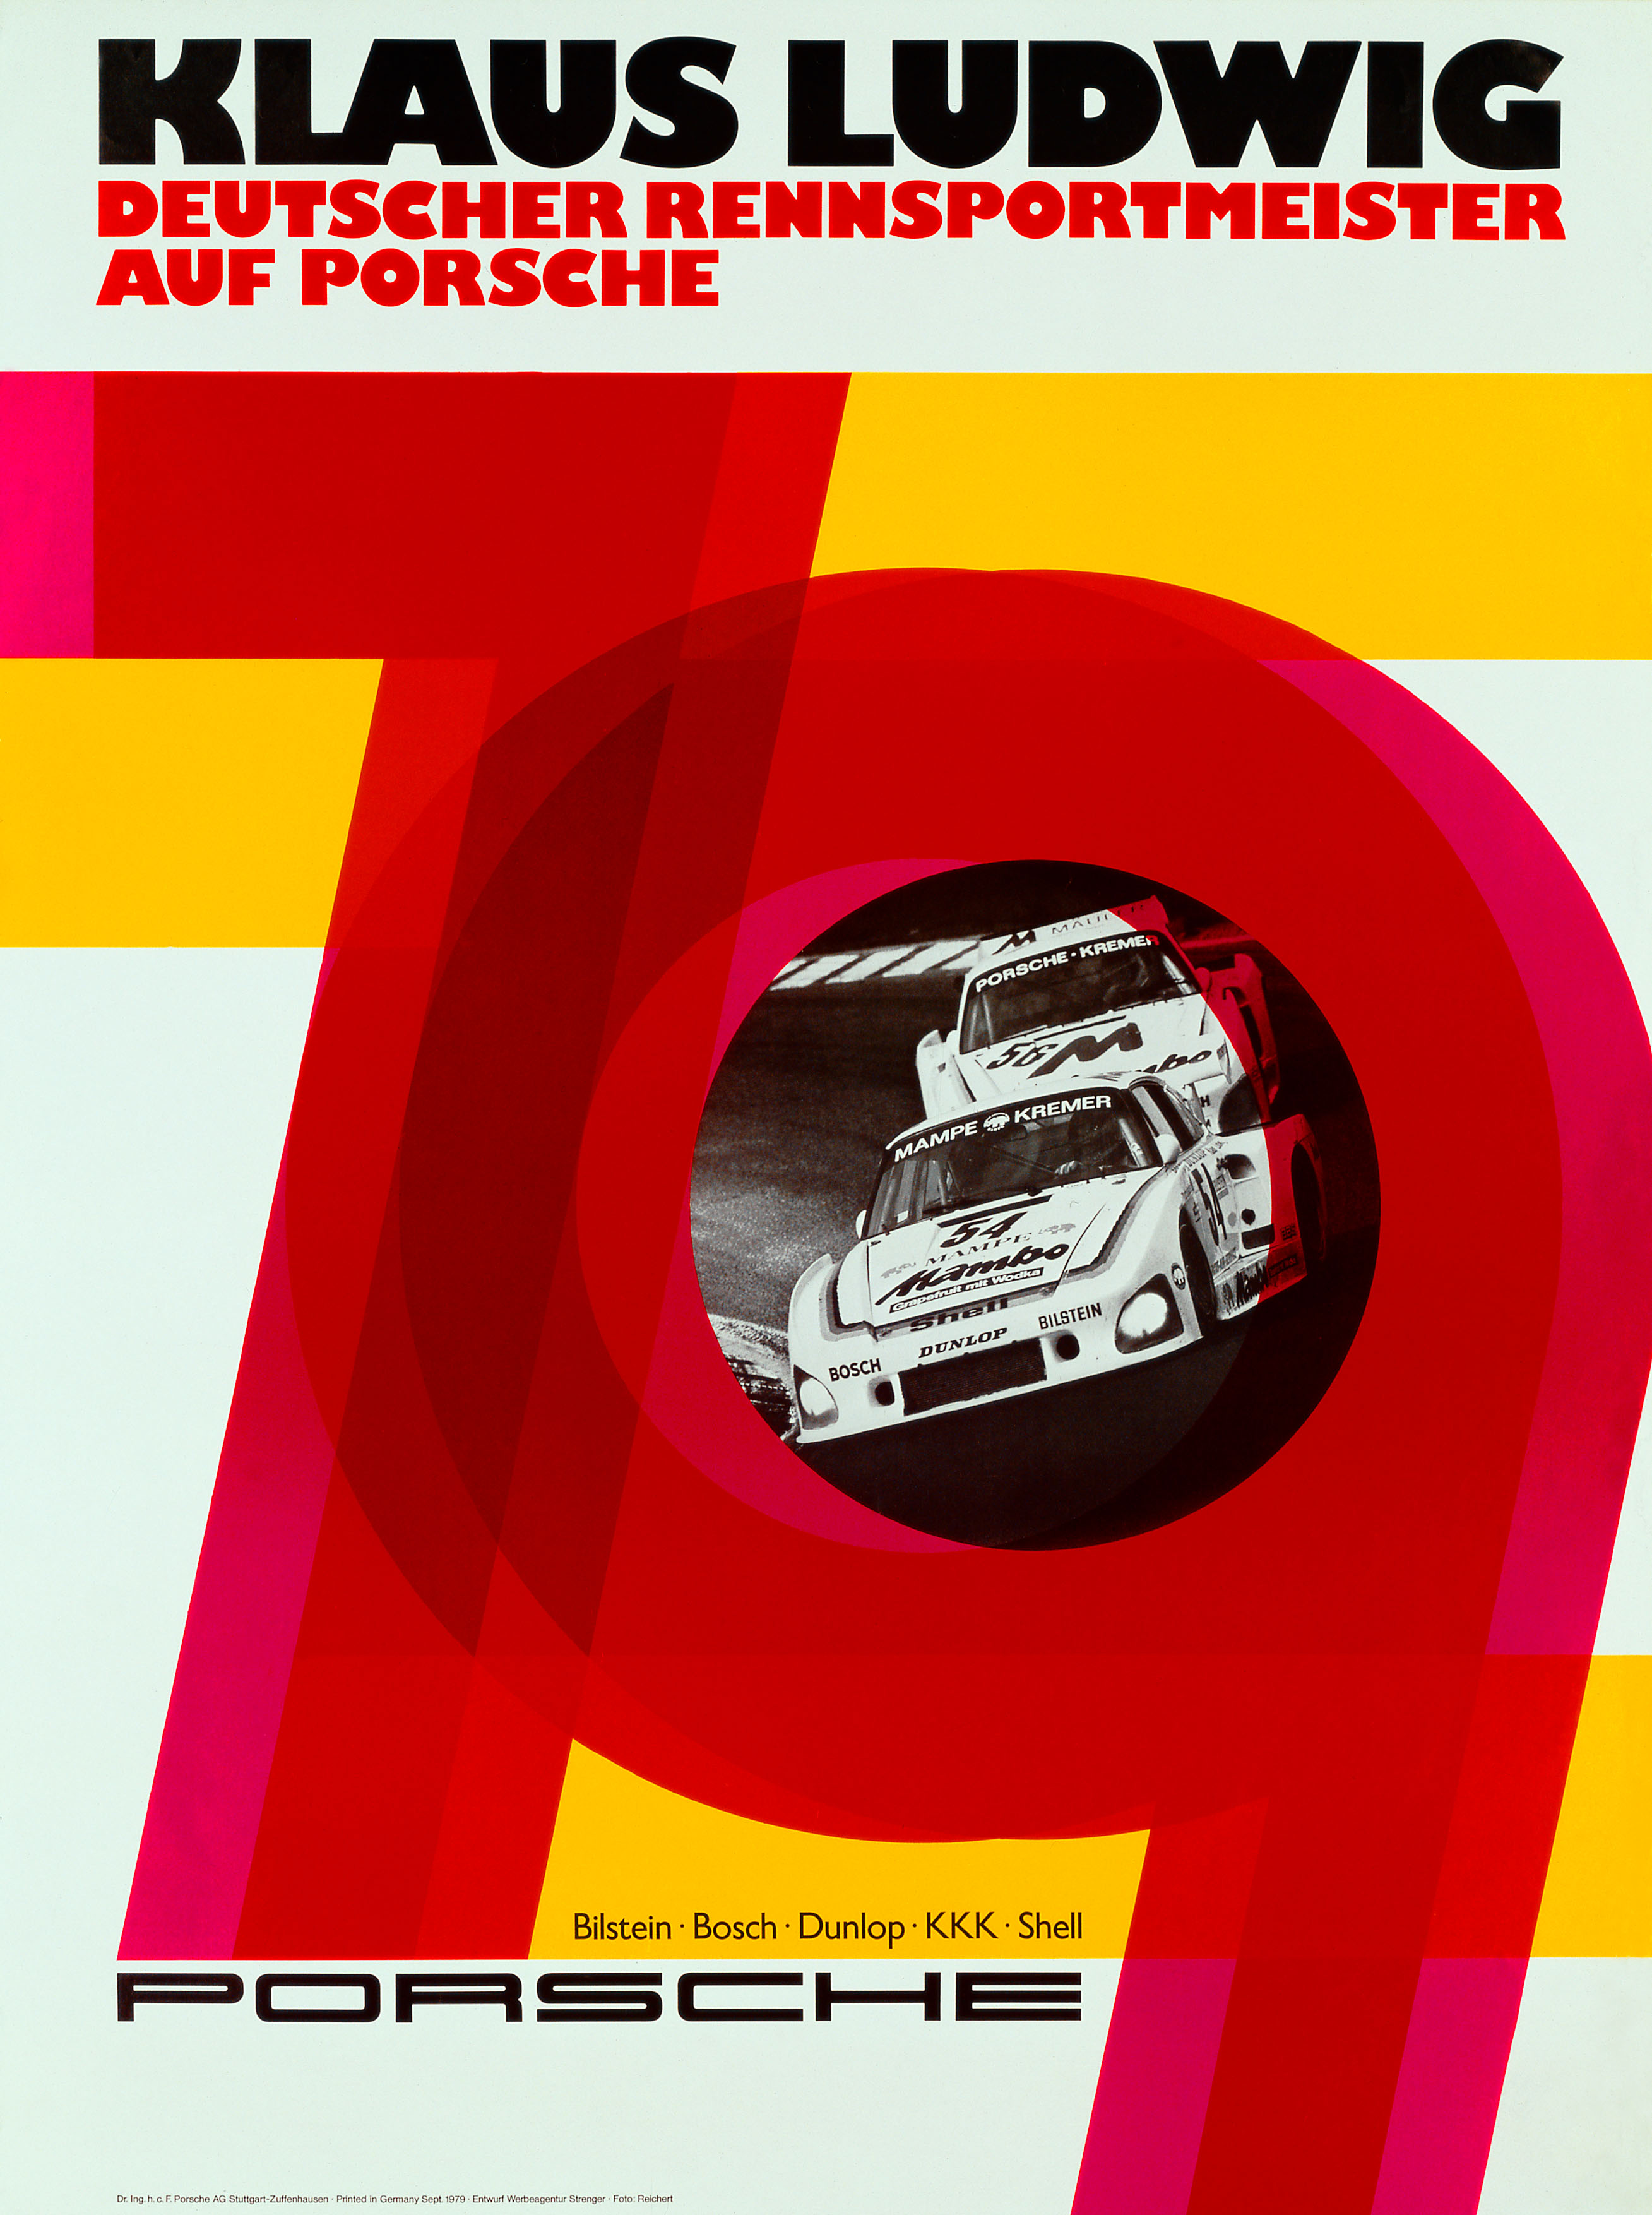 Racing poster by Erich Strenger, 2018, Porsche AG